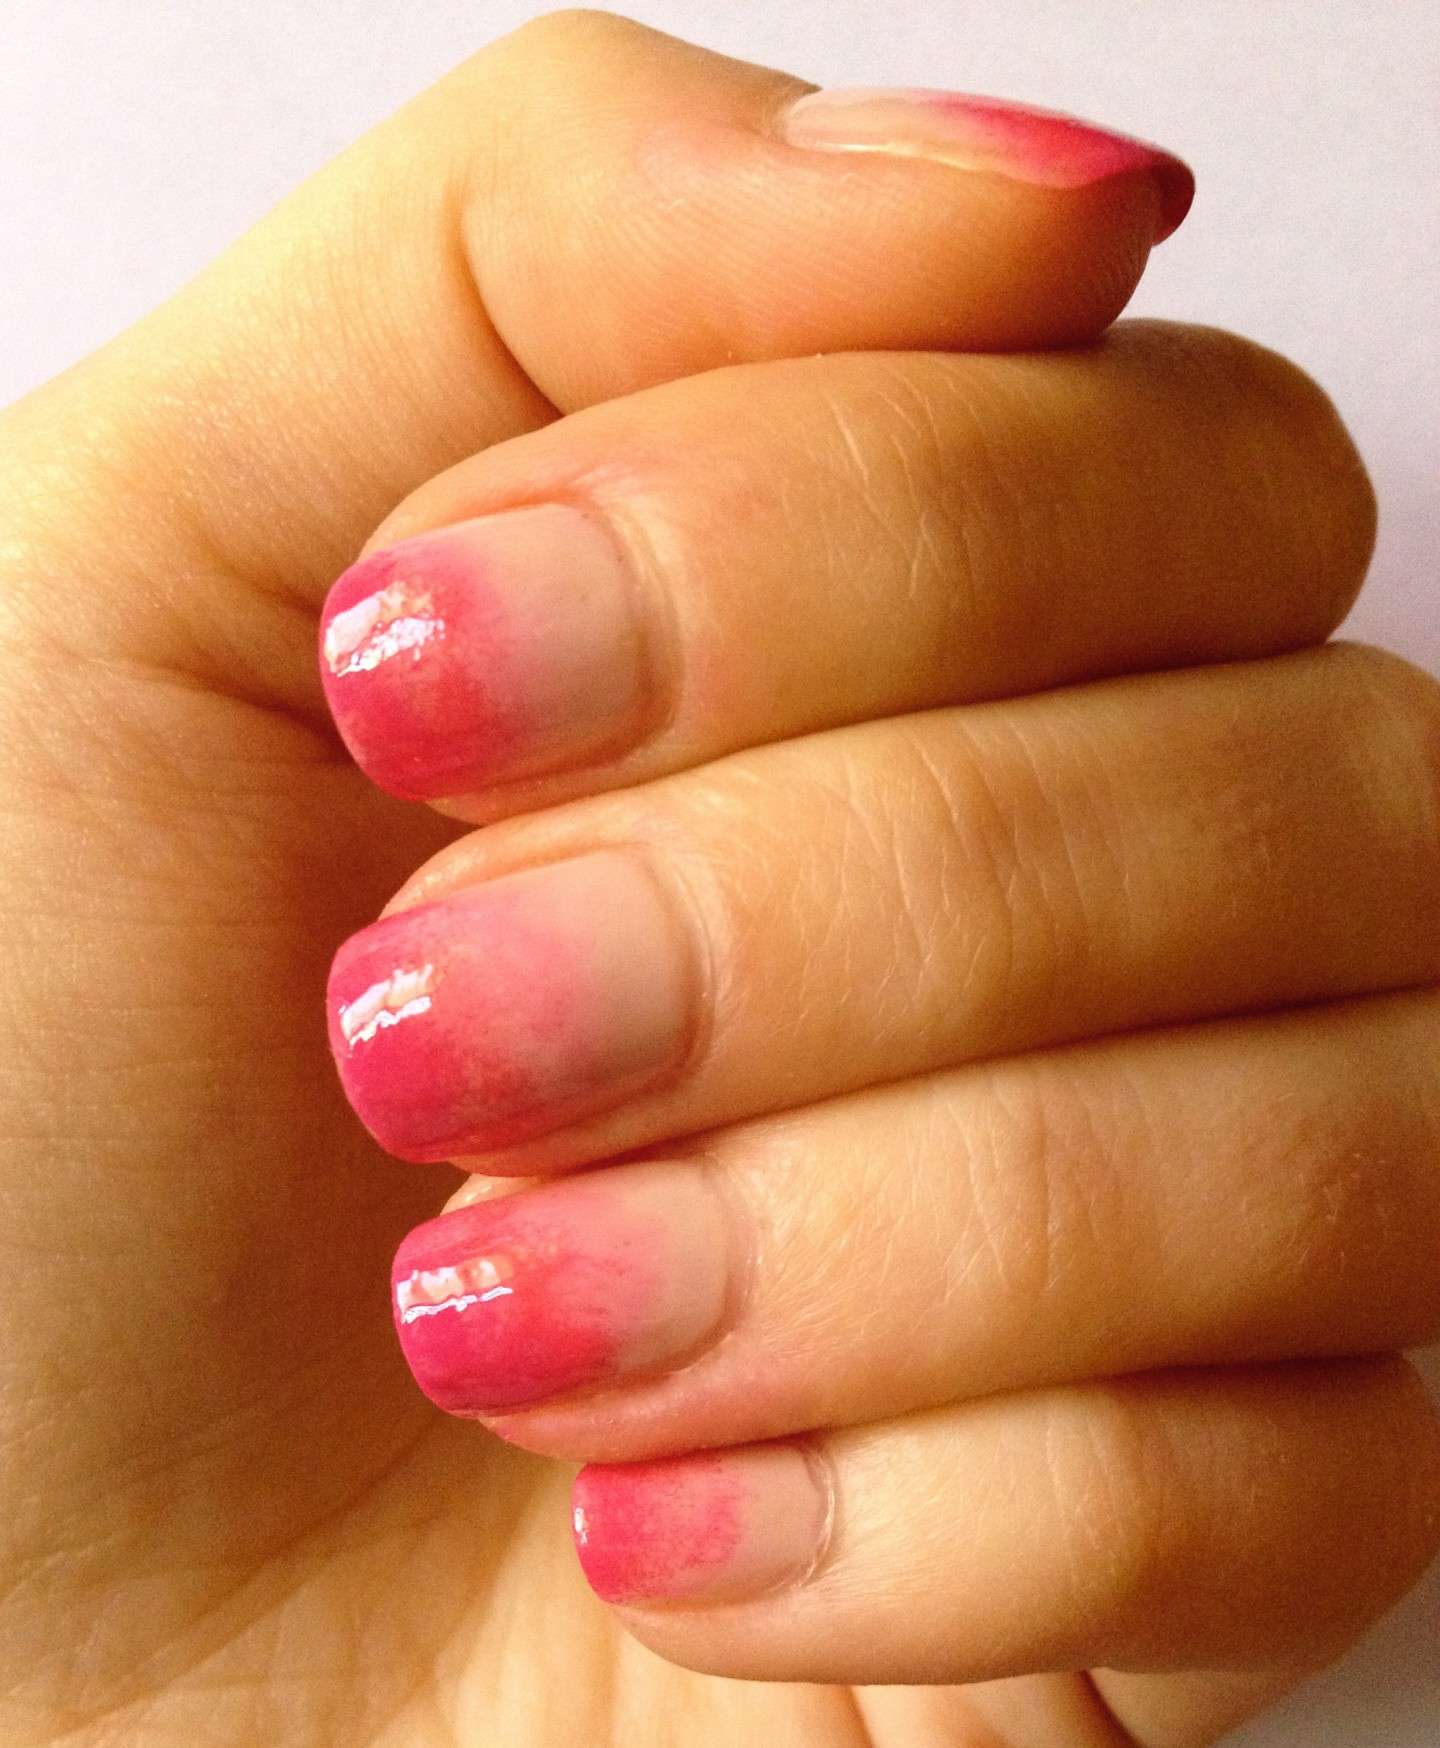 Nail art sfumata pink